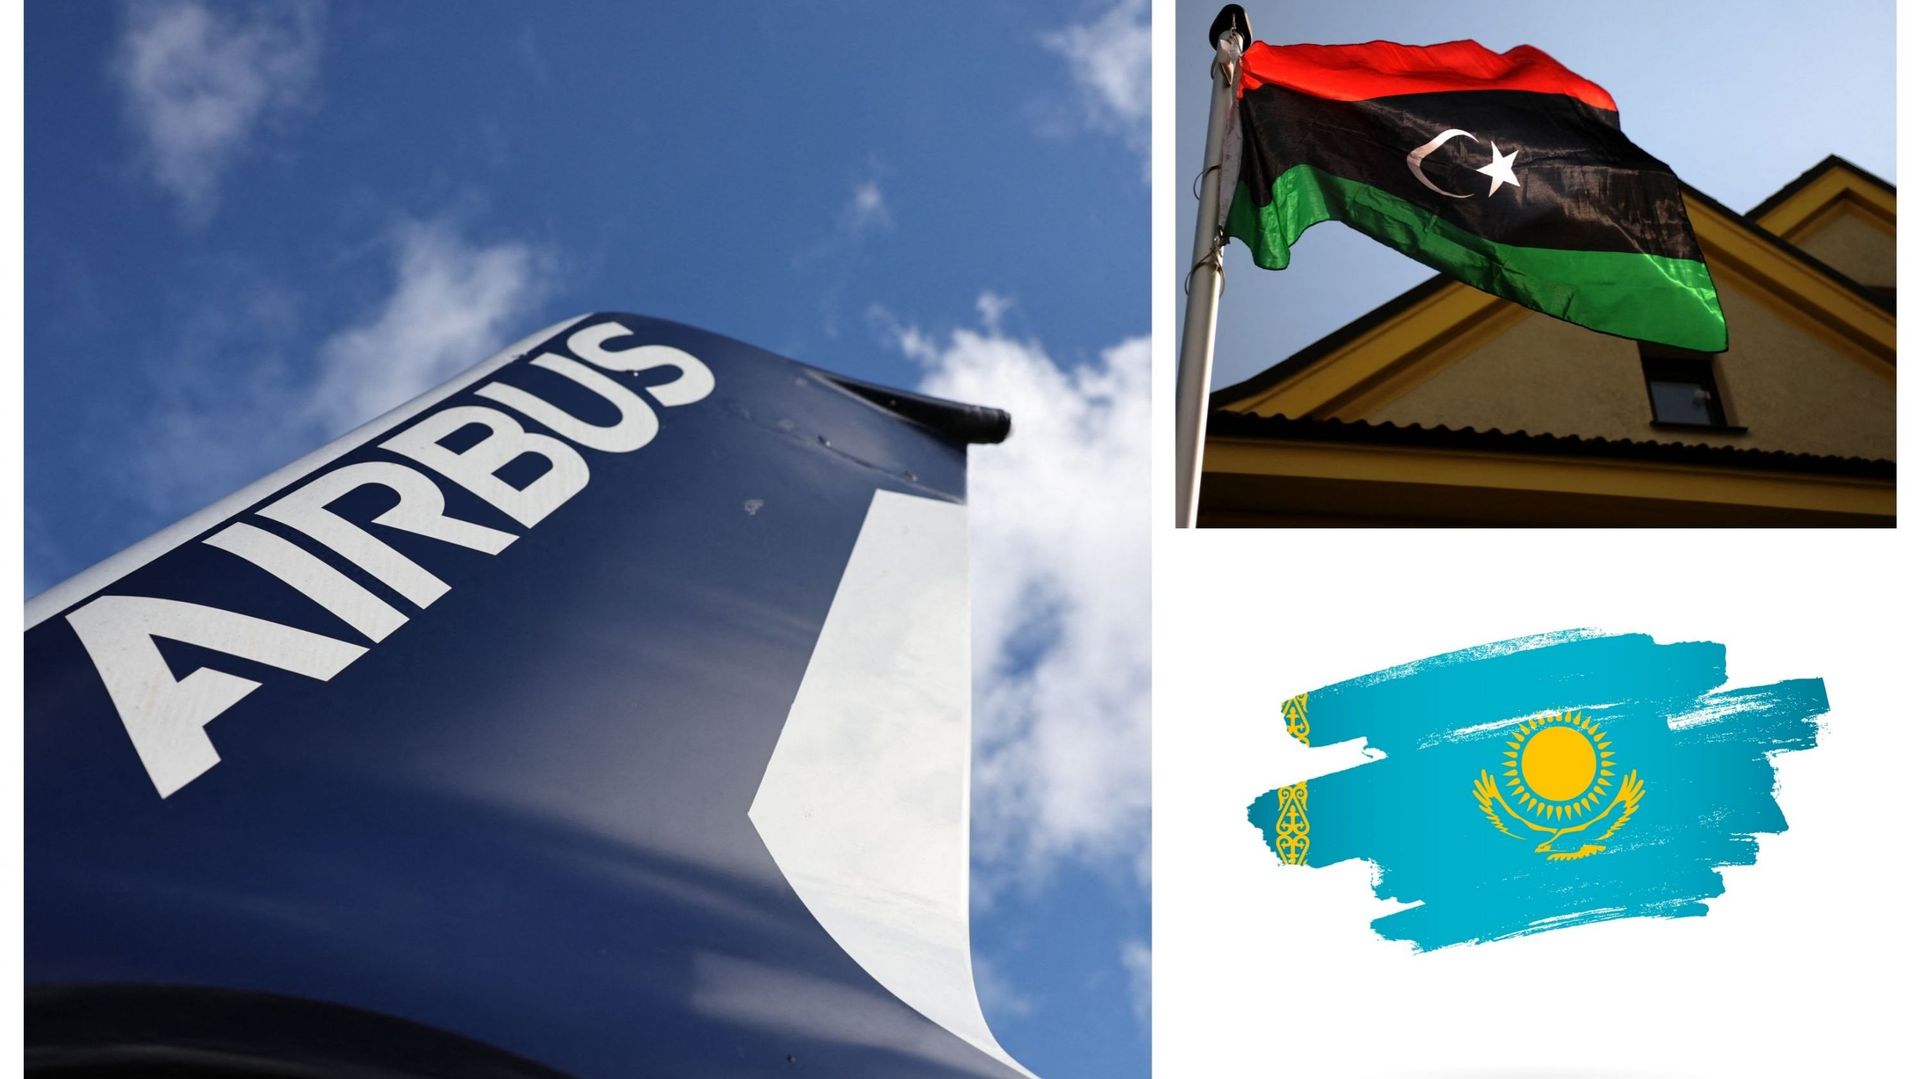 Logo d'Airbus, drapeaux libyen et kazakh (illustrations)